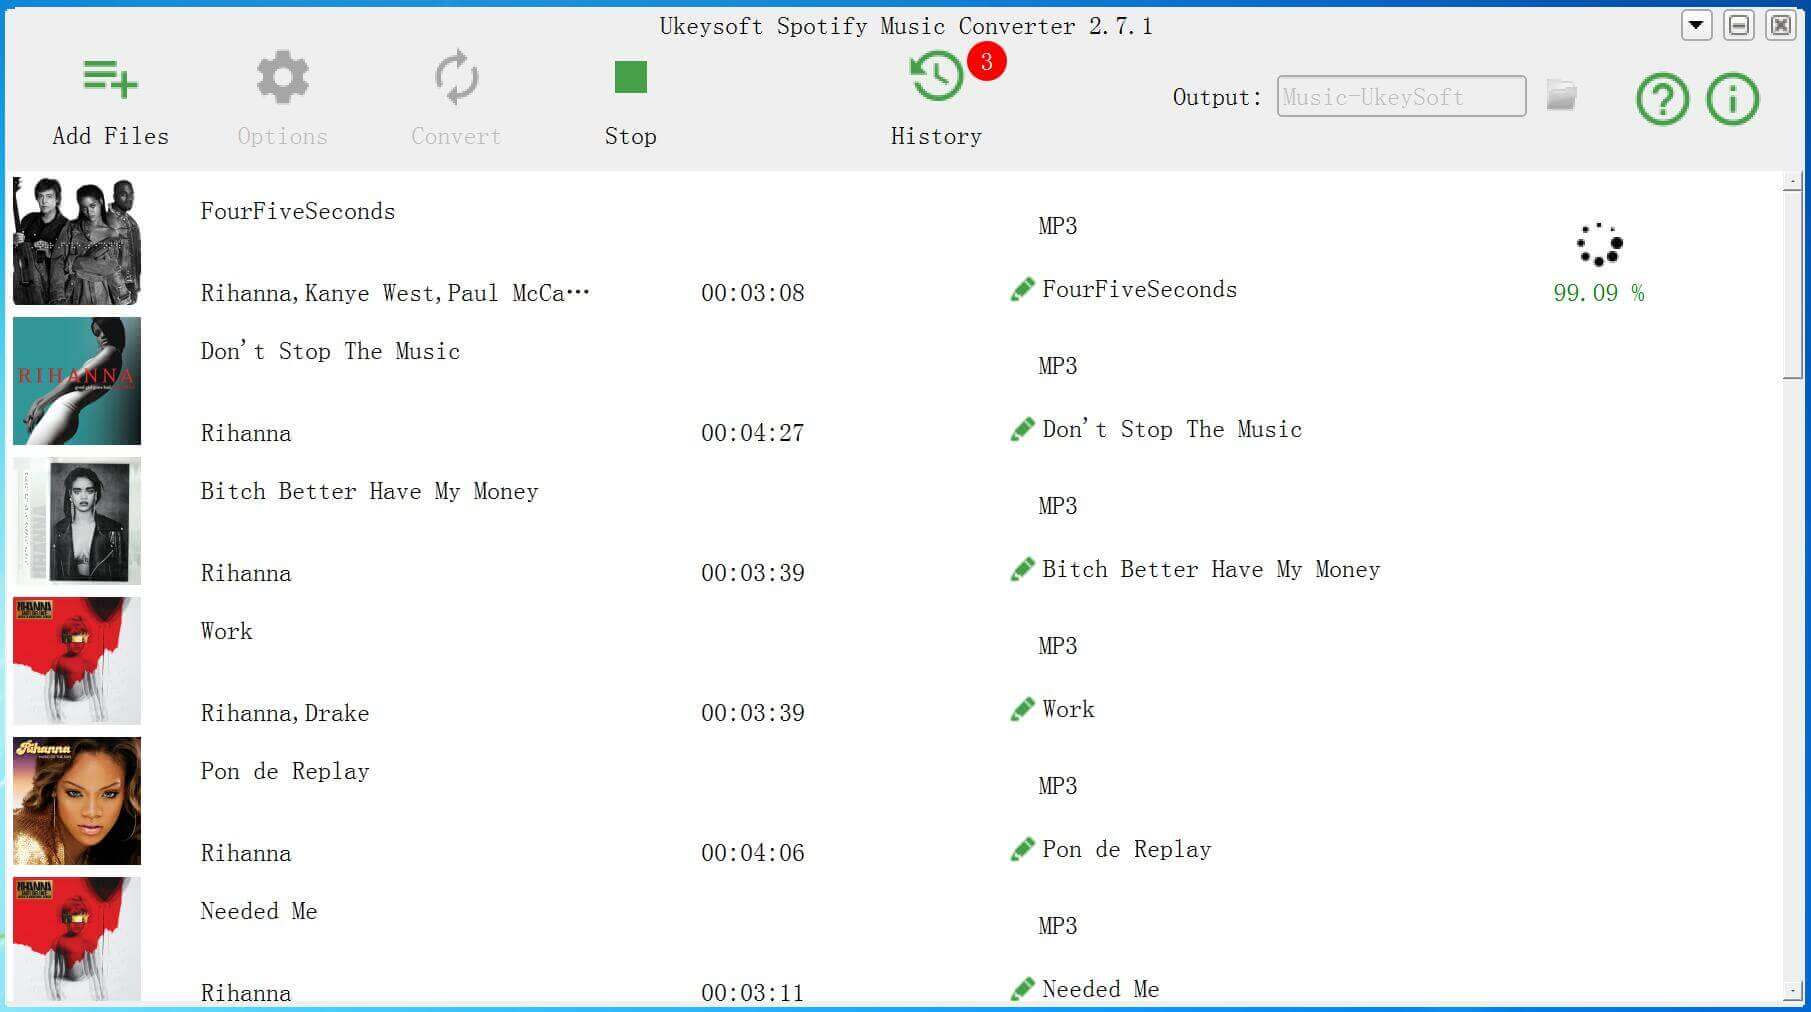 загрузка песен Рианны в MP3